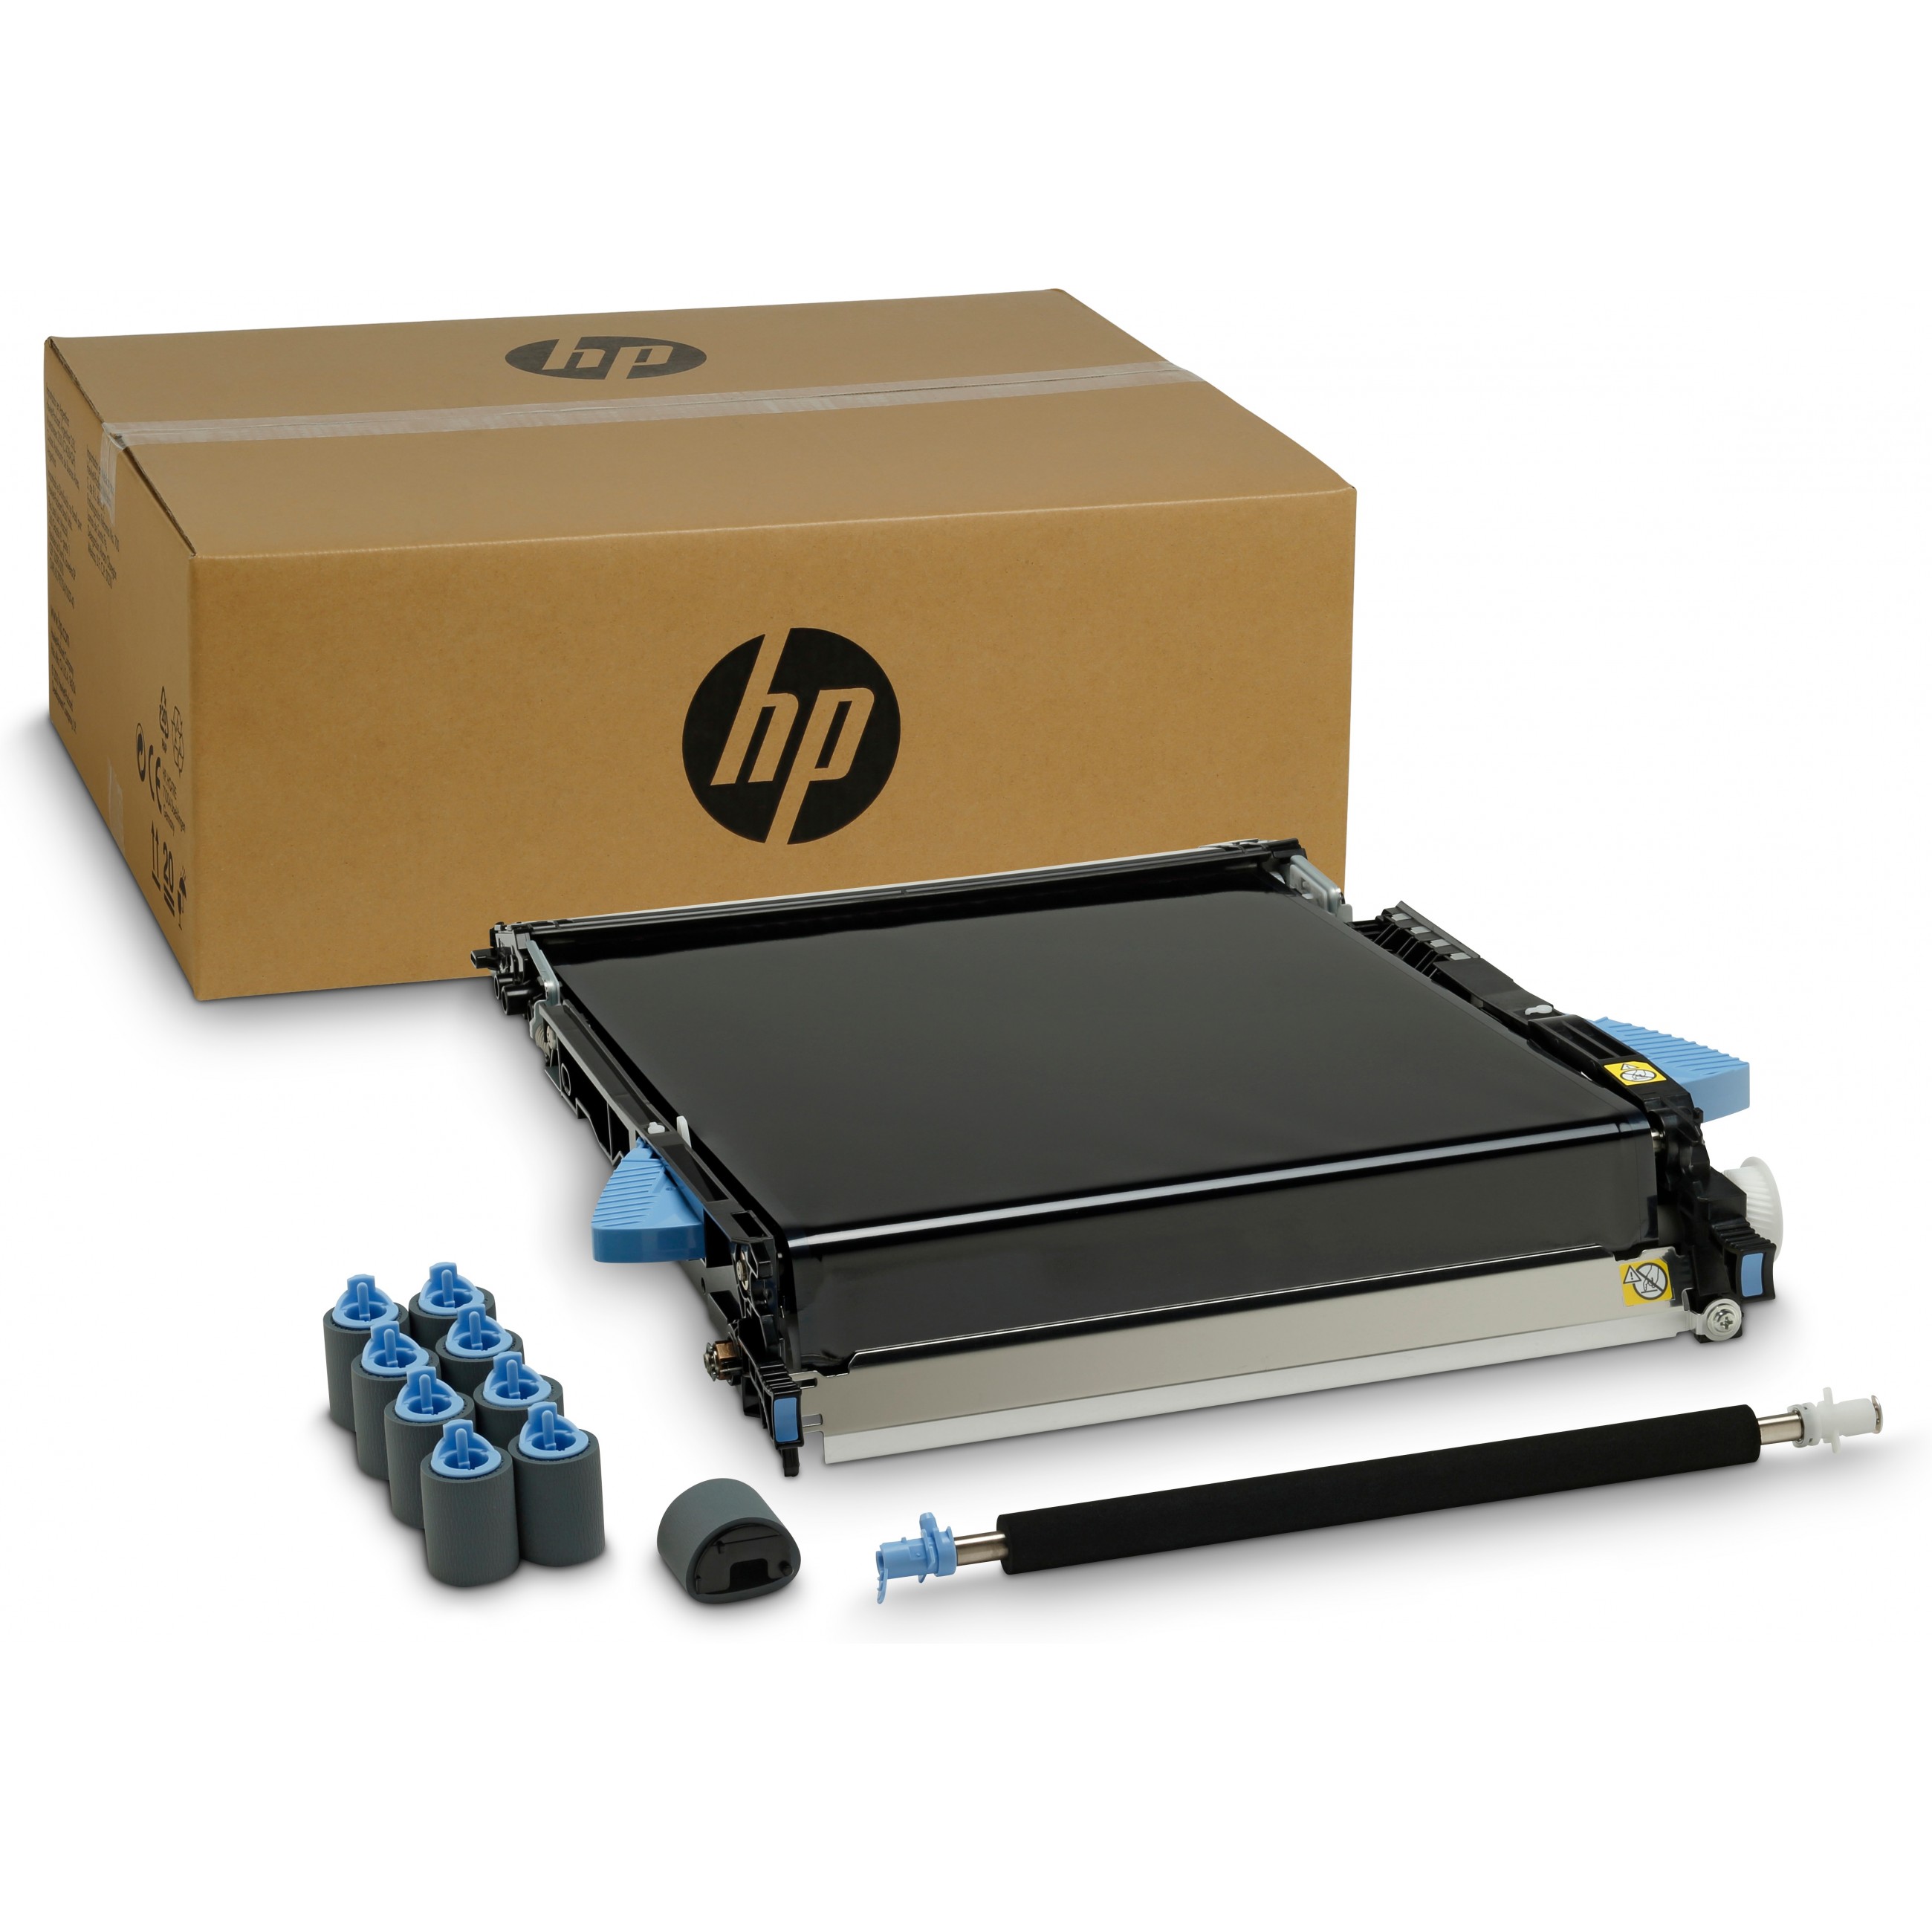 HP Color LaserJet CE249A Image Transfer Kit - CE249A